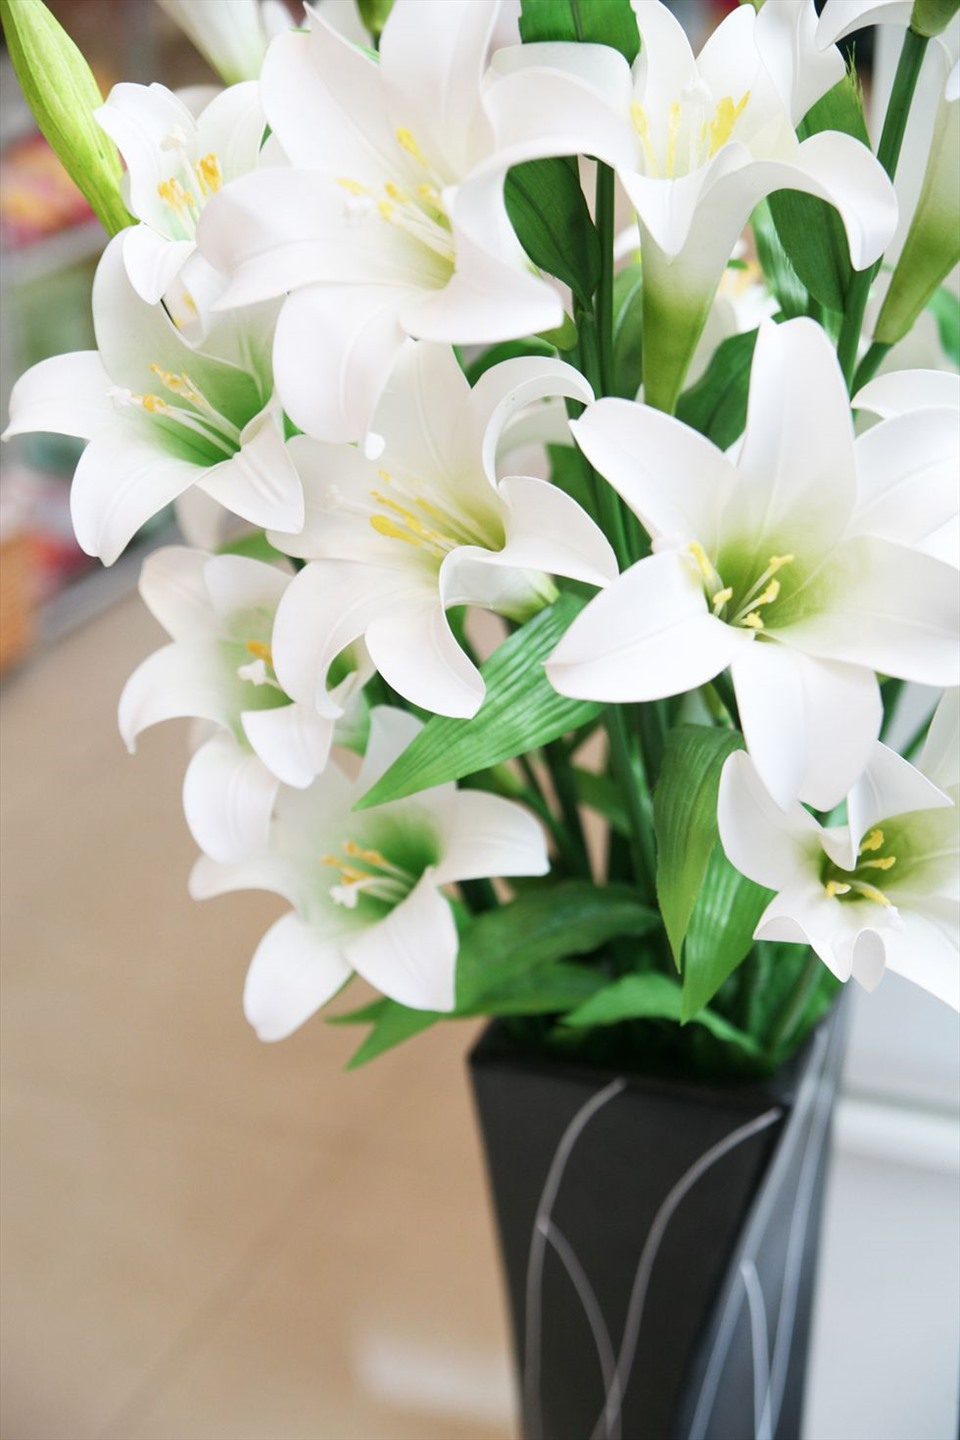 7. Hoa loa kèn  Loại hoa màu trắng này thường tượng trưng cho “vẻ đẹp, đẳng cấp và phong cách“. Đặc biệt phái nữ rất yêu thích hương thơm nồng nàn của những bông hoa tuyệt đẹp này.